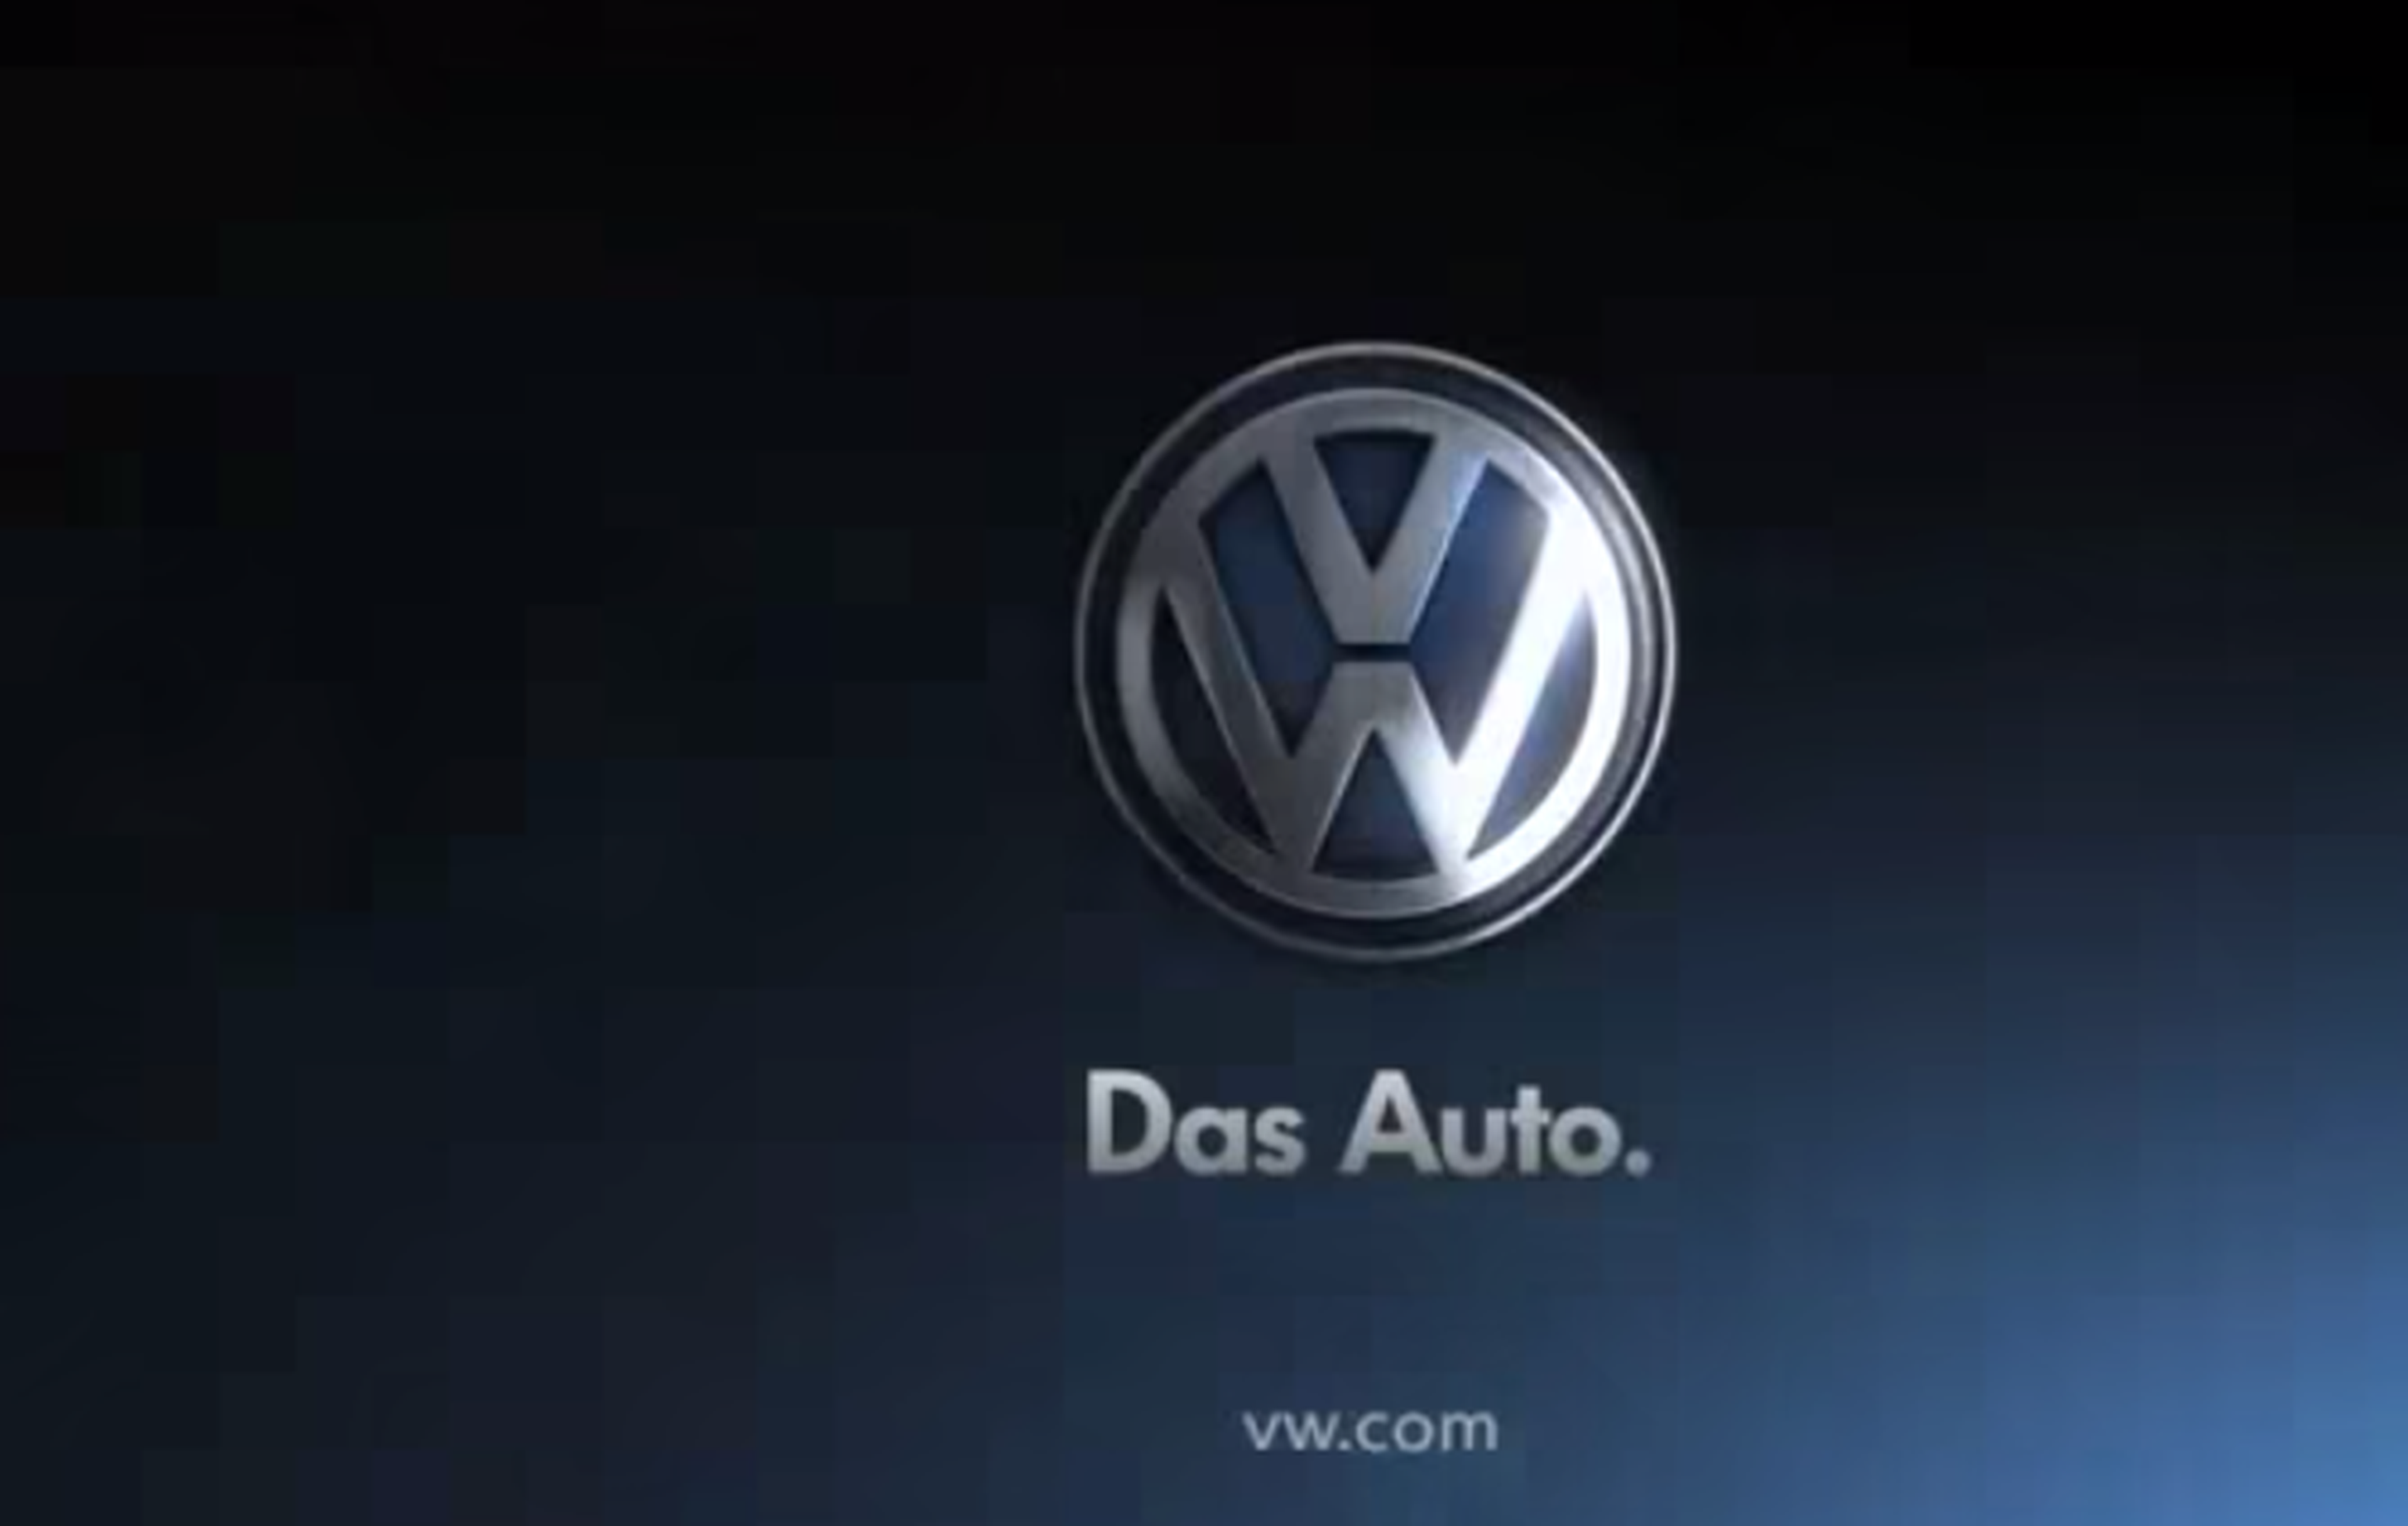 VW entre los 5 mejores anuncios de la década según Youtube